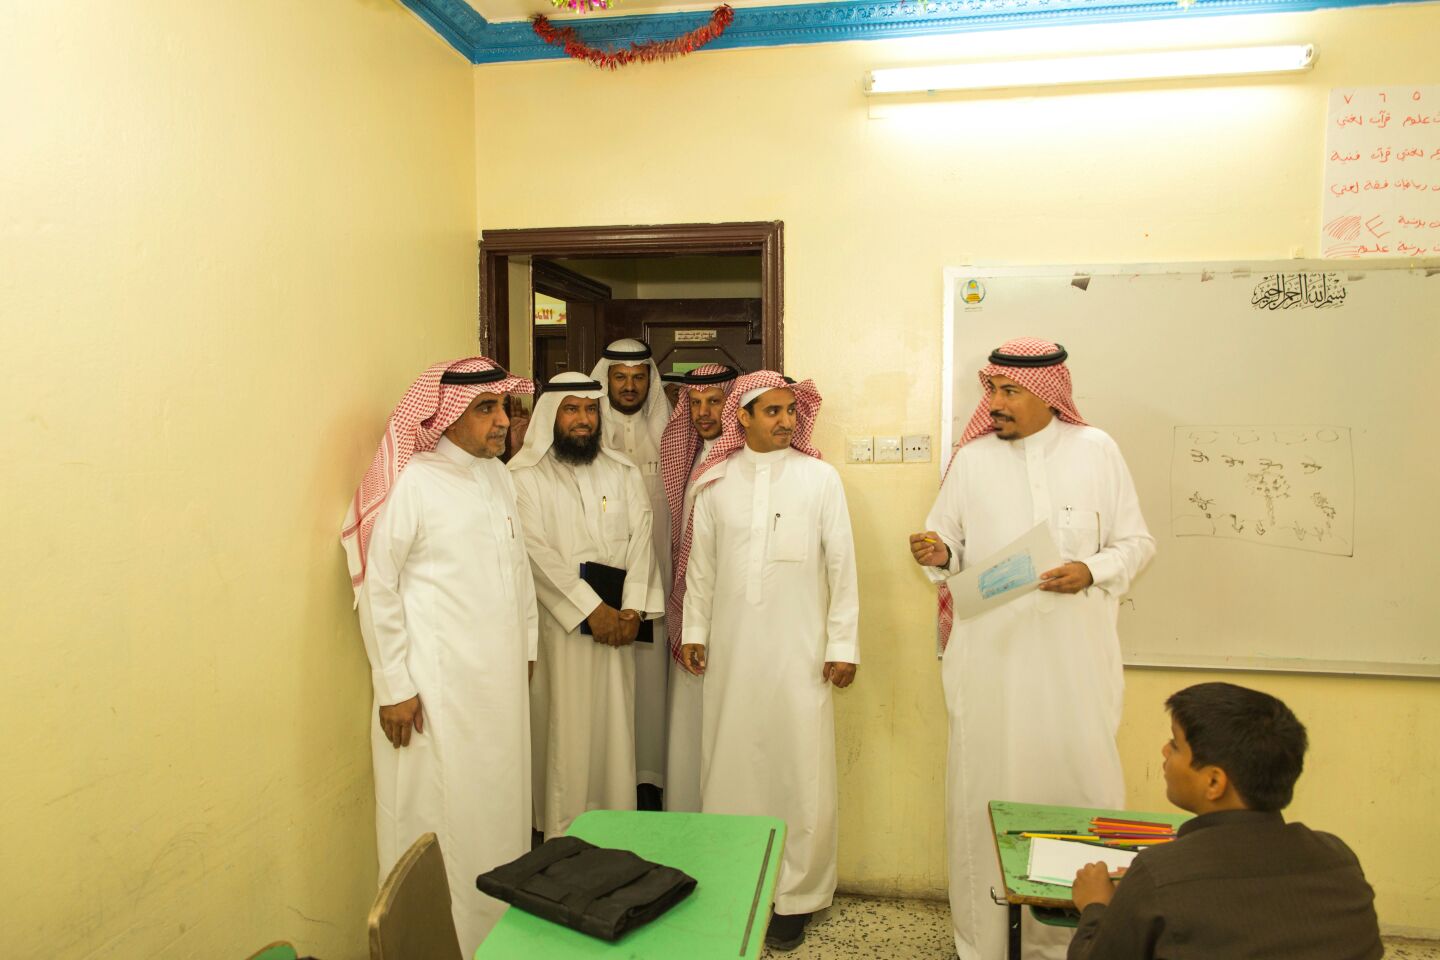 قائد مدرسة خالد الوذيناني يحول مبني مدرسة قديم الي واحة جاذبة للطلاب (3)